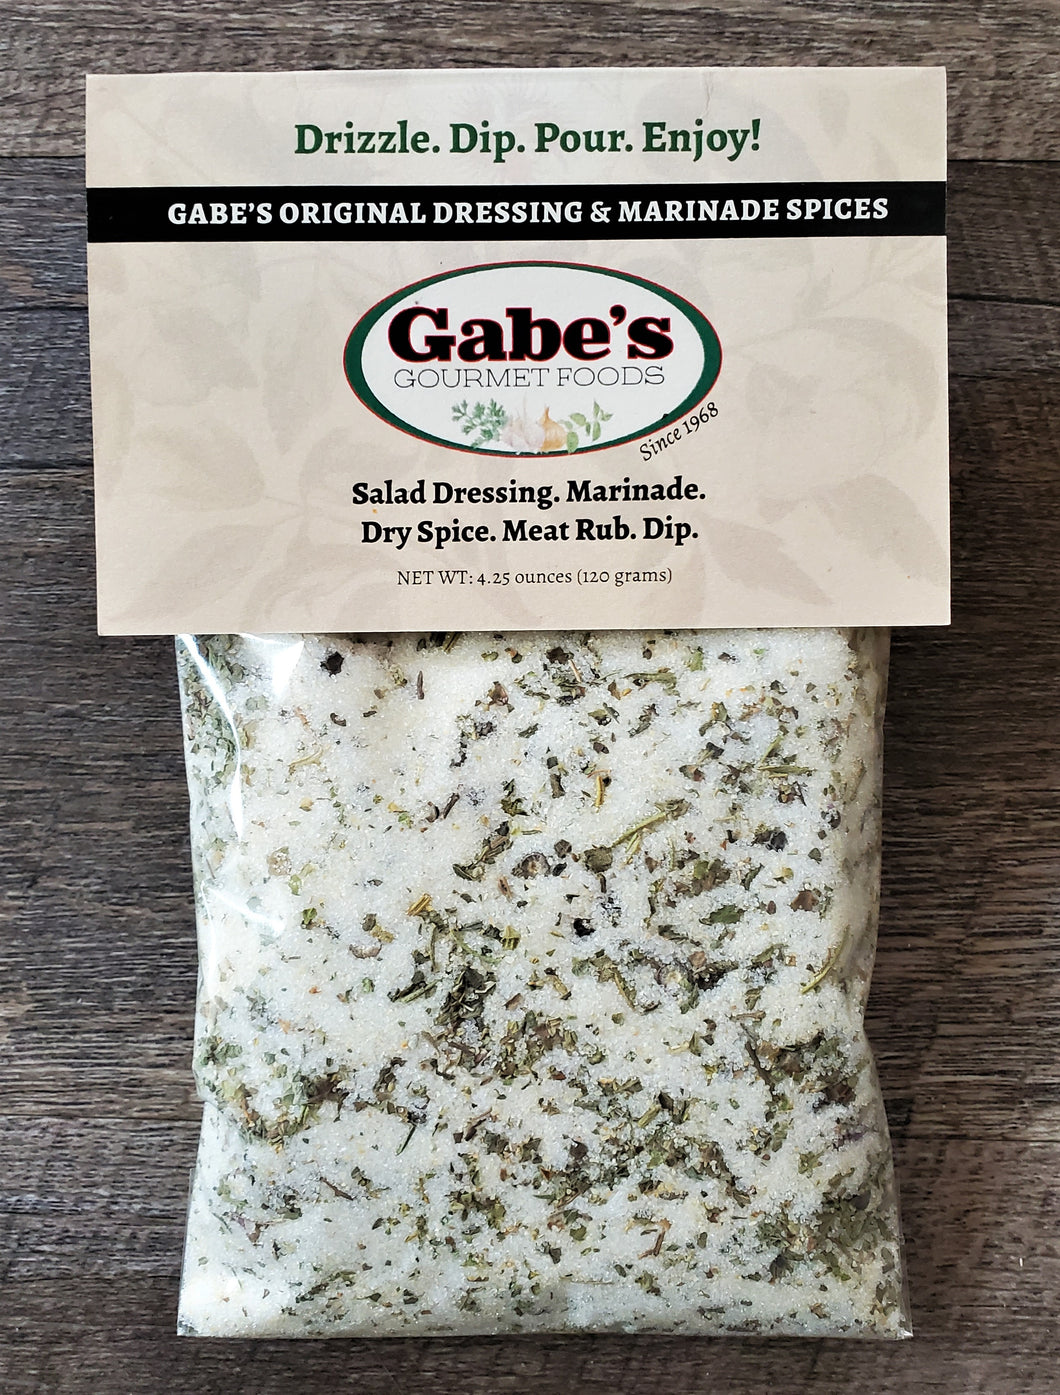 Gabe's Original Dressing & Marinade Spices